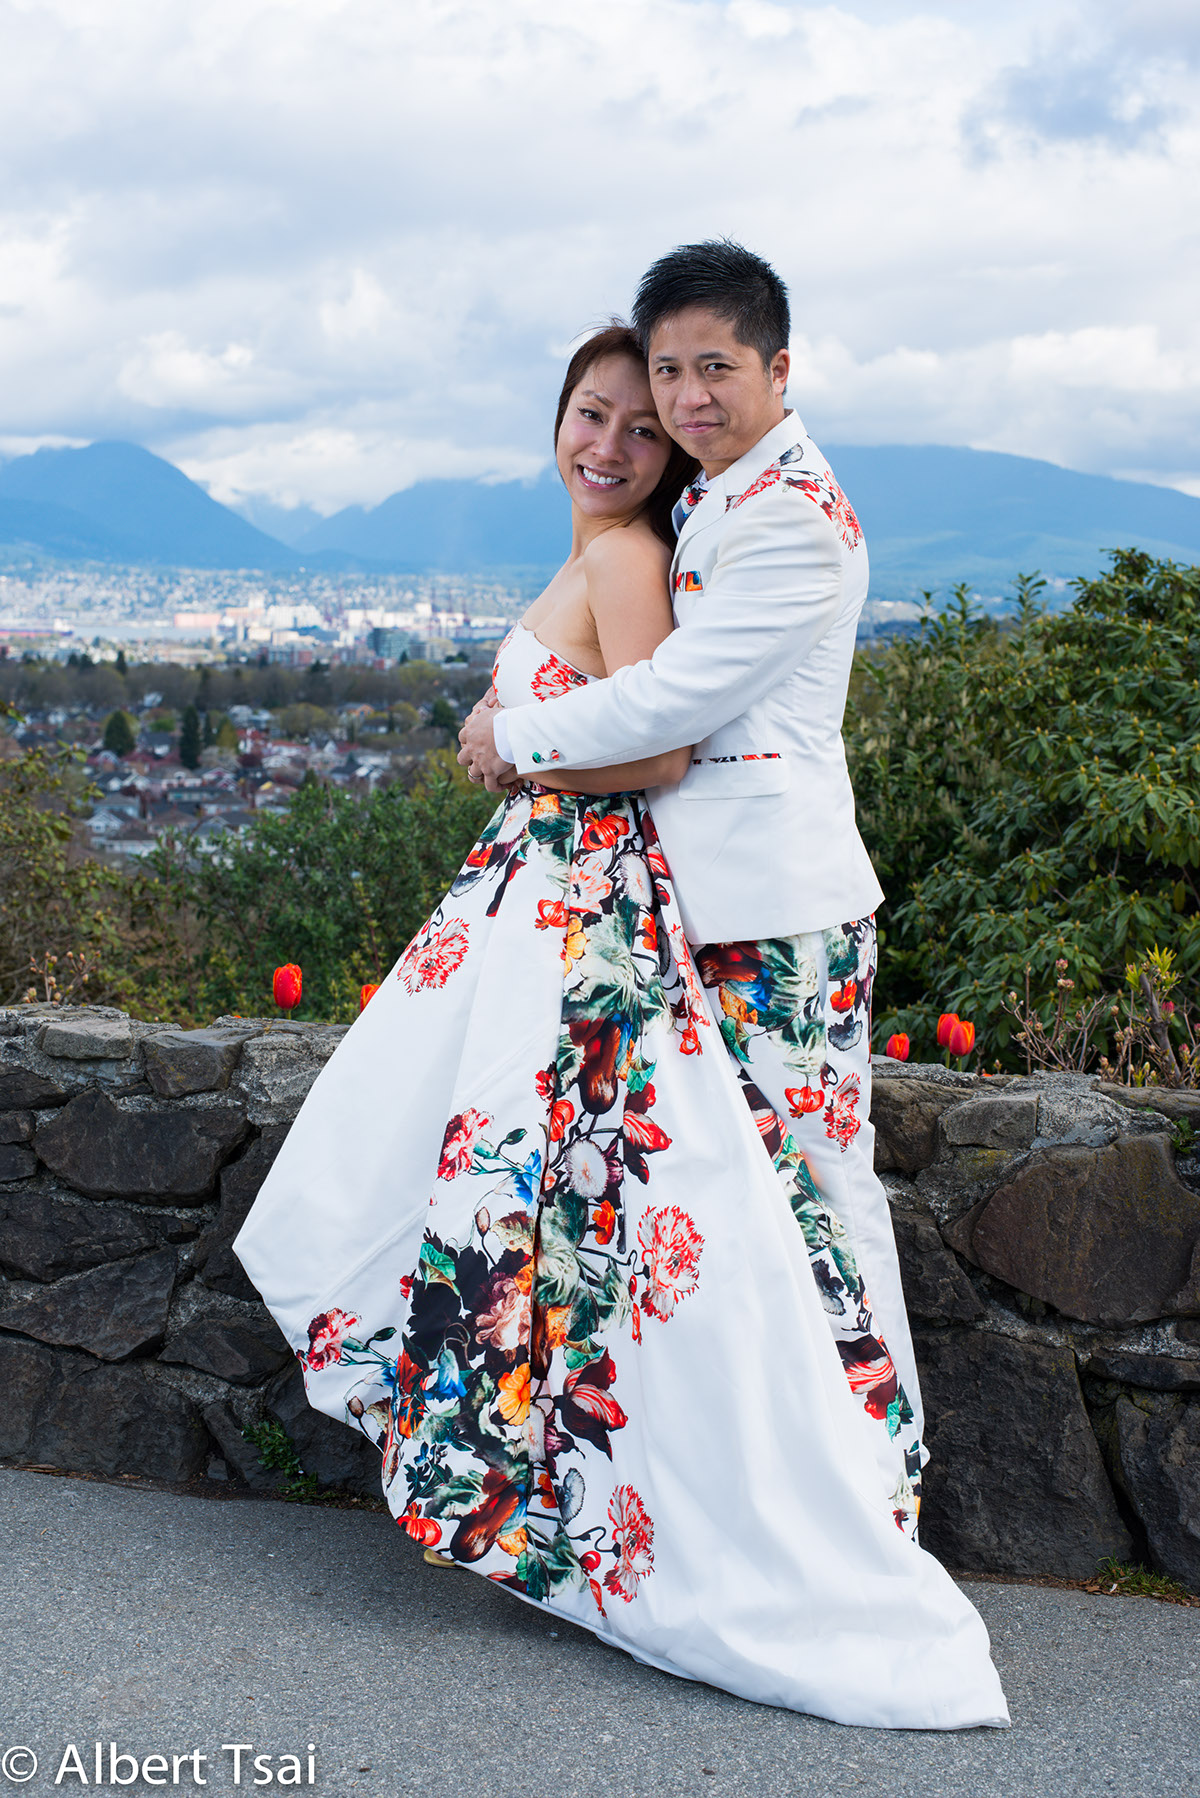 Karen Chu wedding Queen Elezabeht Park vancouver Canada nikon D810 Zeiss Otus 1.4/85 Wedding Photography Albert TSAI